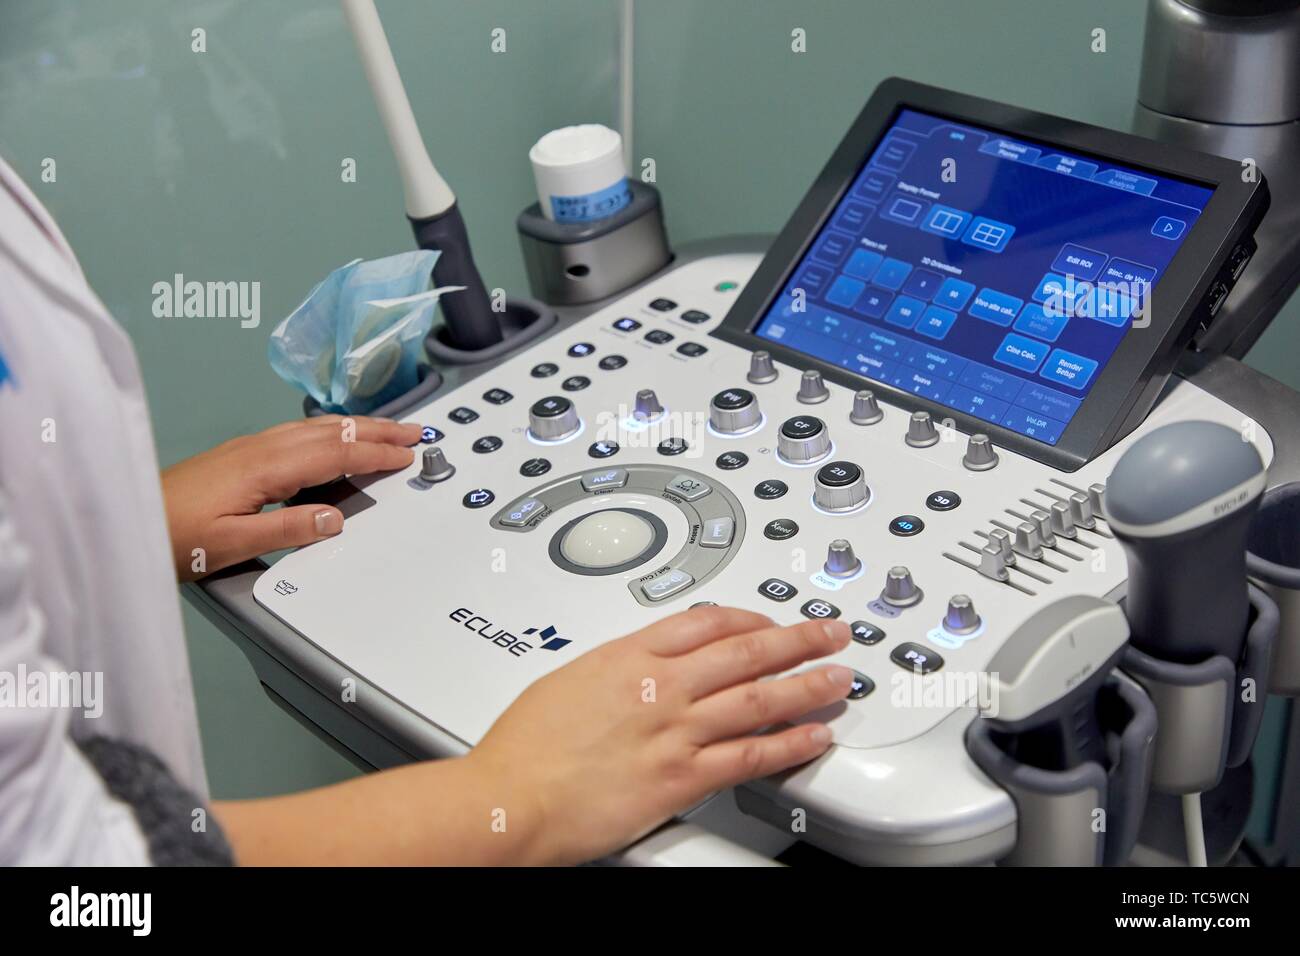 Des systèmes de diagnostic à ultrasons, l'échographie 4D, hôpital, Donostia, San Sebastian, Gipuzkoa, Pays Basque, Espagne Banque D'Images